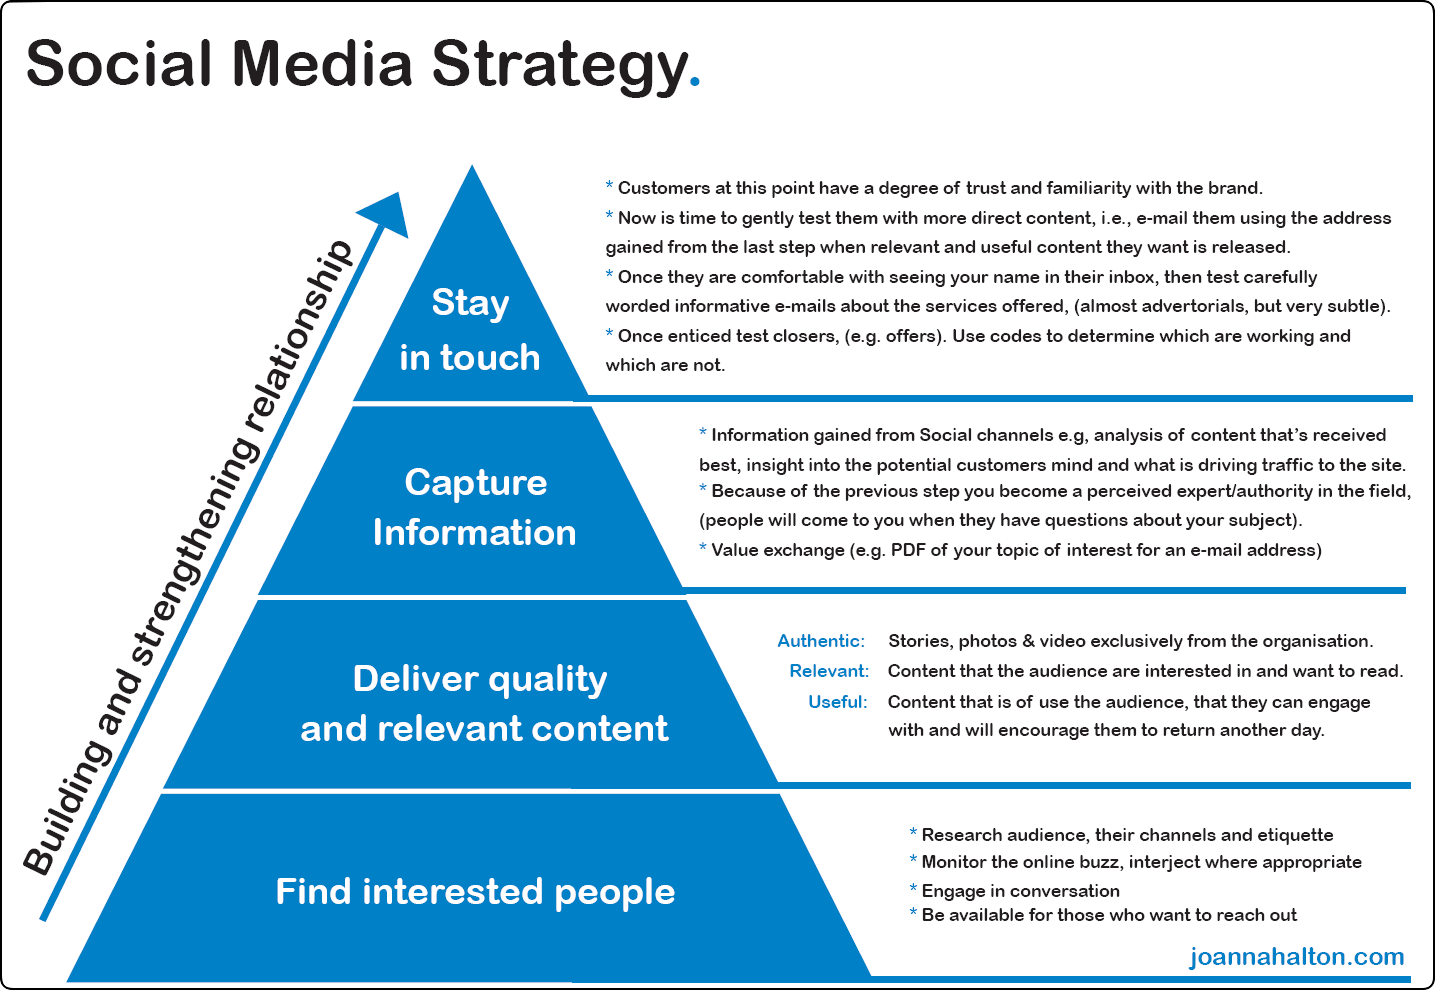 Social Media Strategy Template | bravebtr